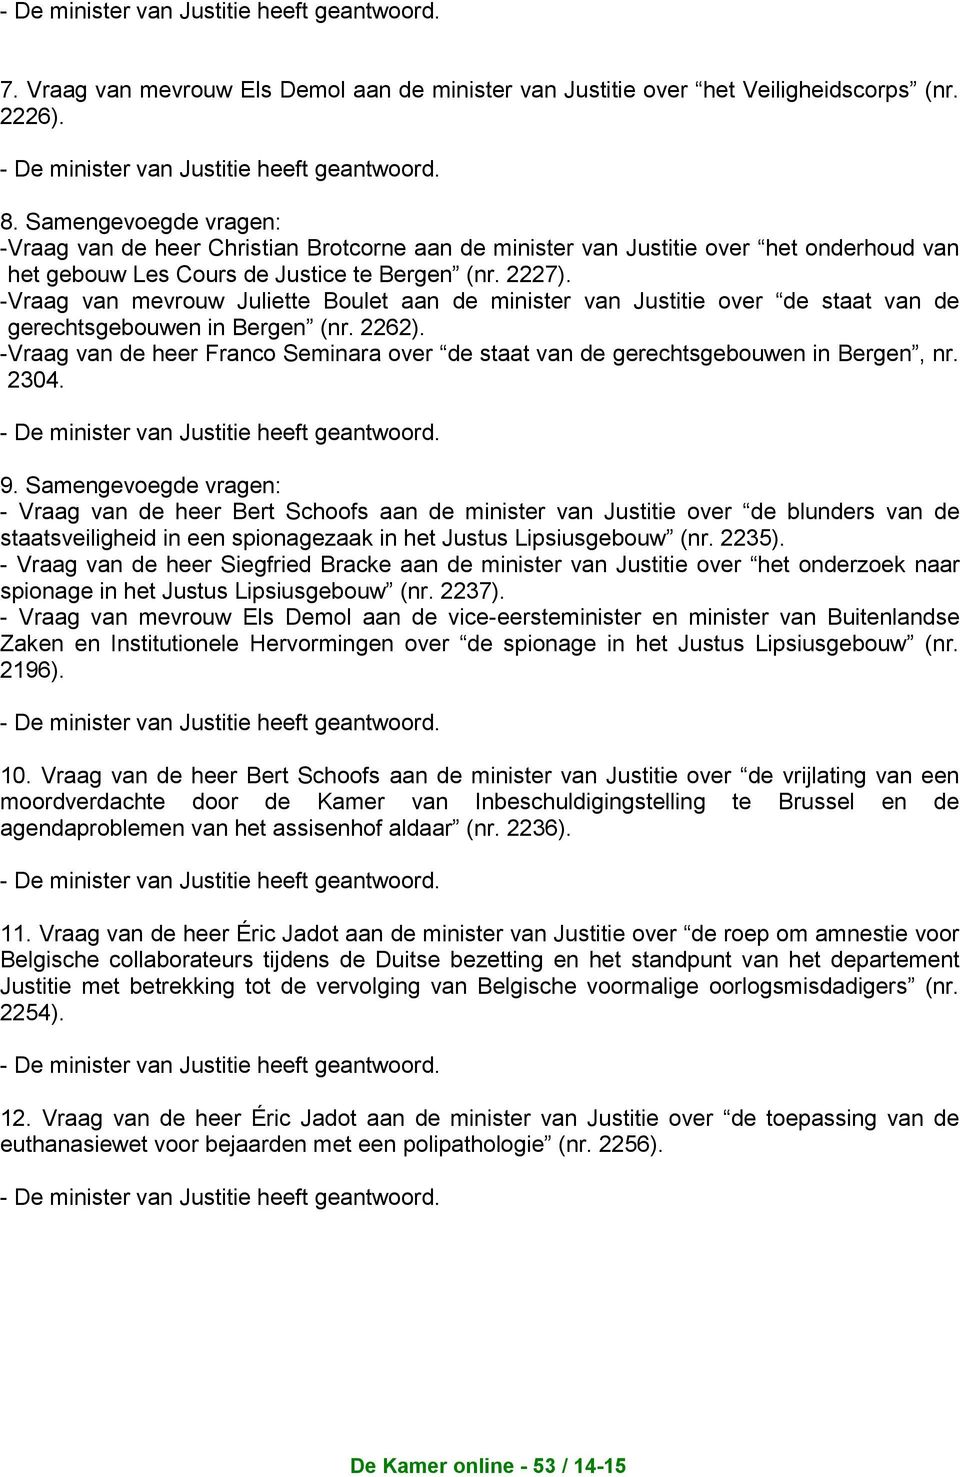 - Vraag van mevrouw Juliette Boulet aan de minister van Justitie over de staat van de gerechtsgebouwen in Bergen (nr. 2262).